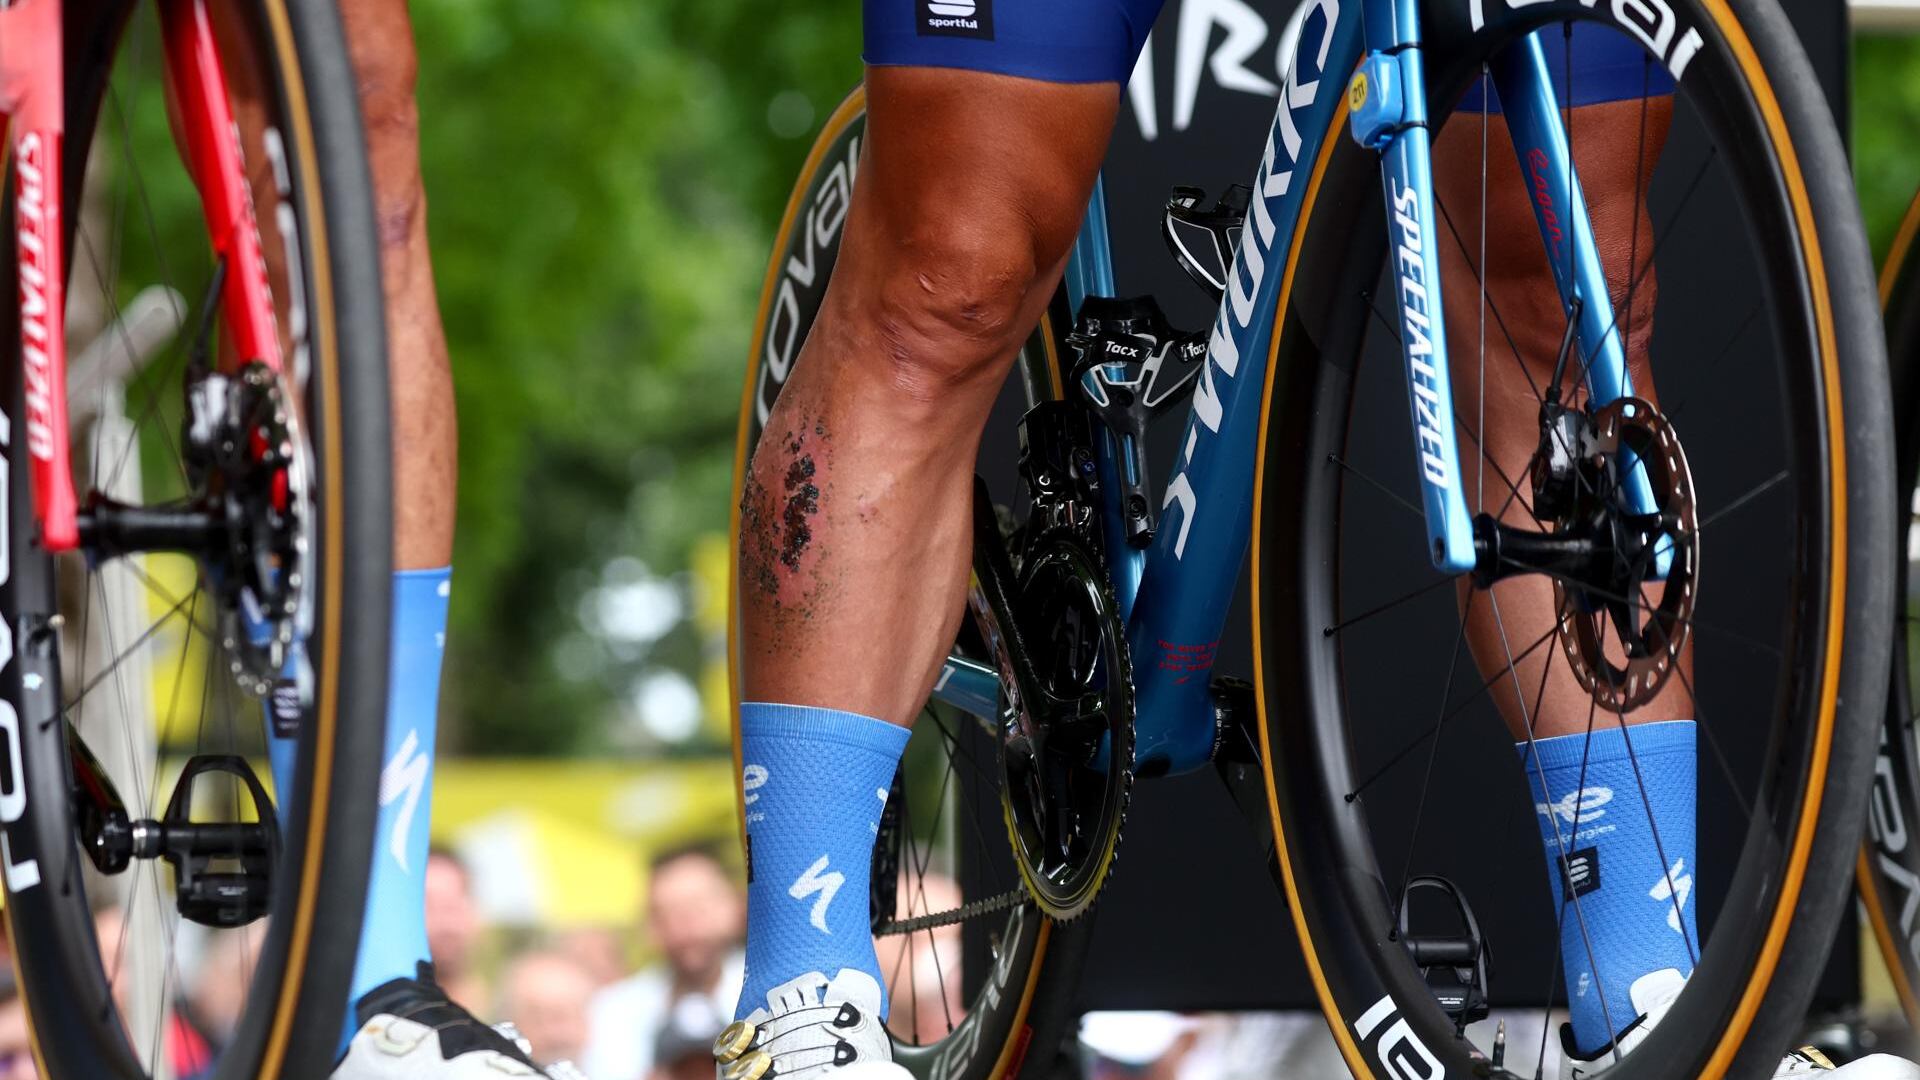 ¿Boicot al Tour de Francia? Grave denuncia hecha por los corredores